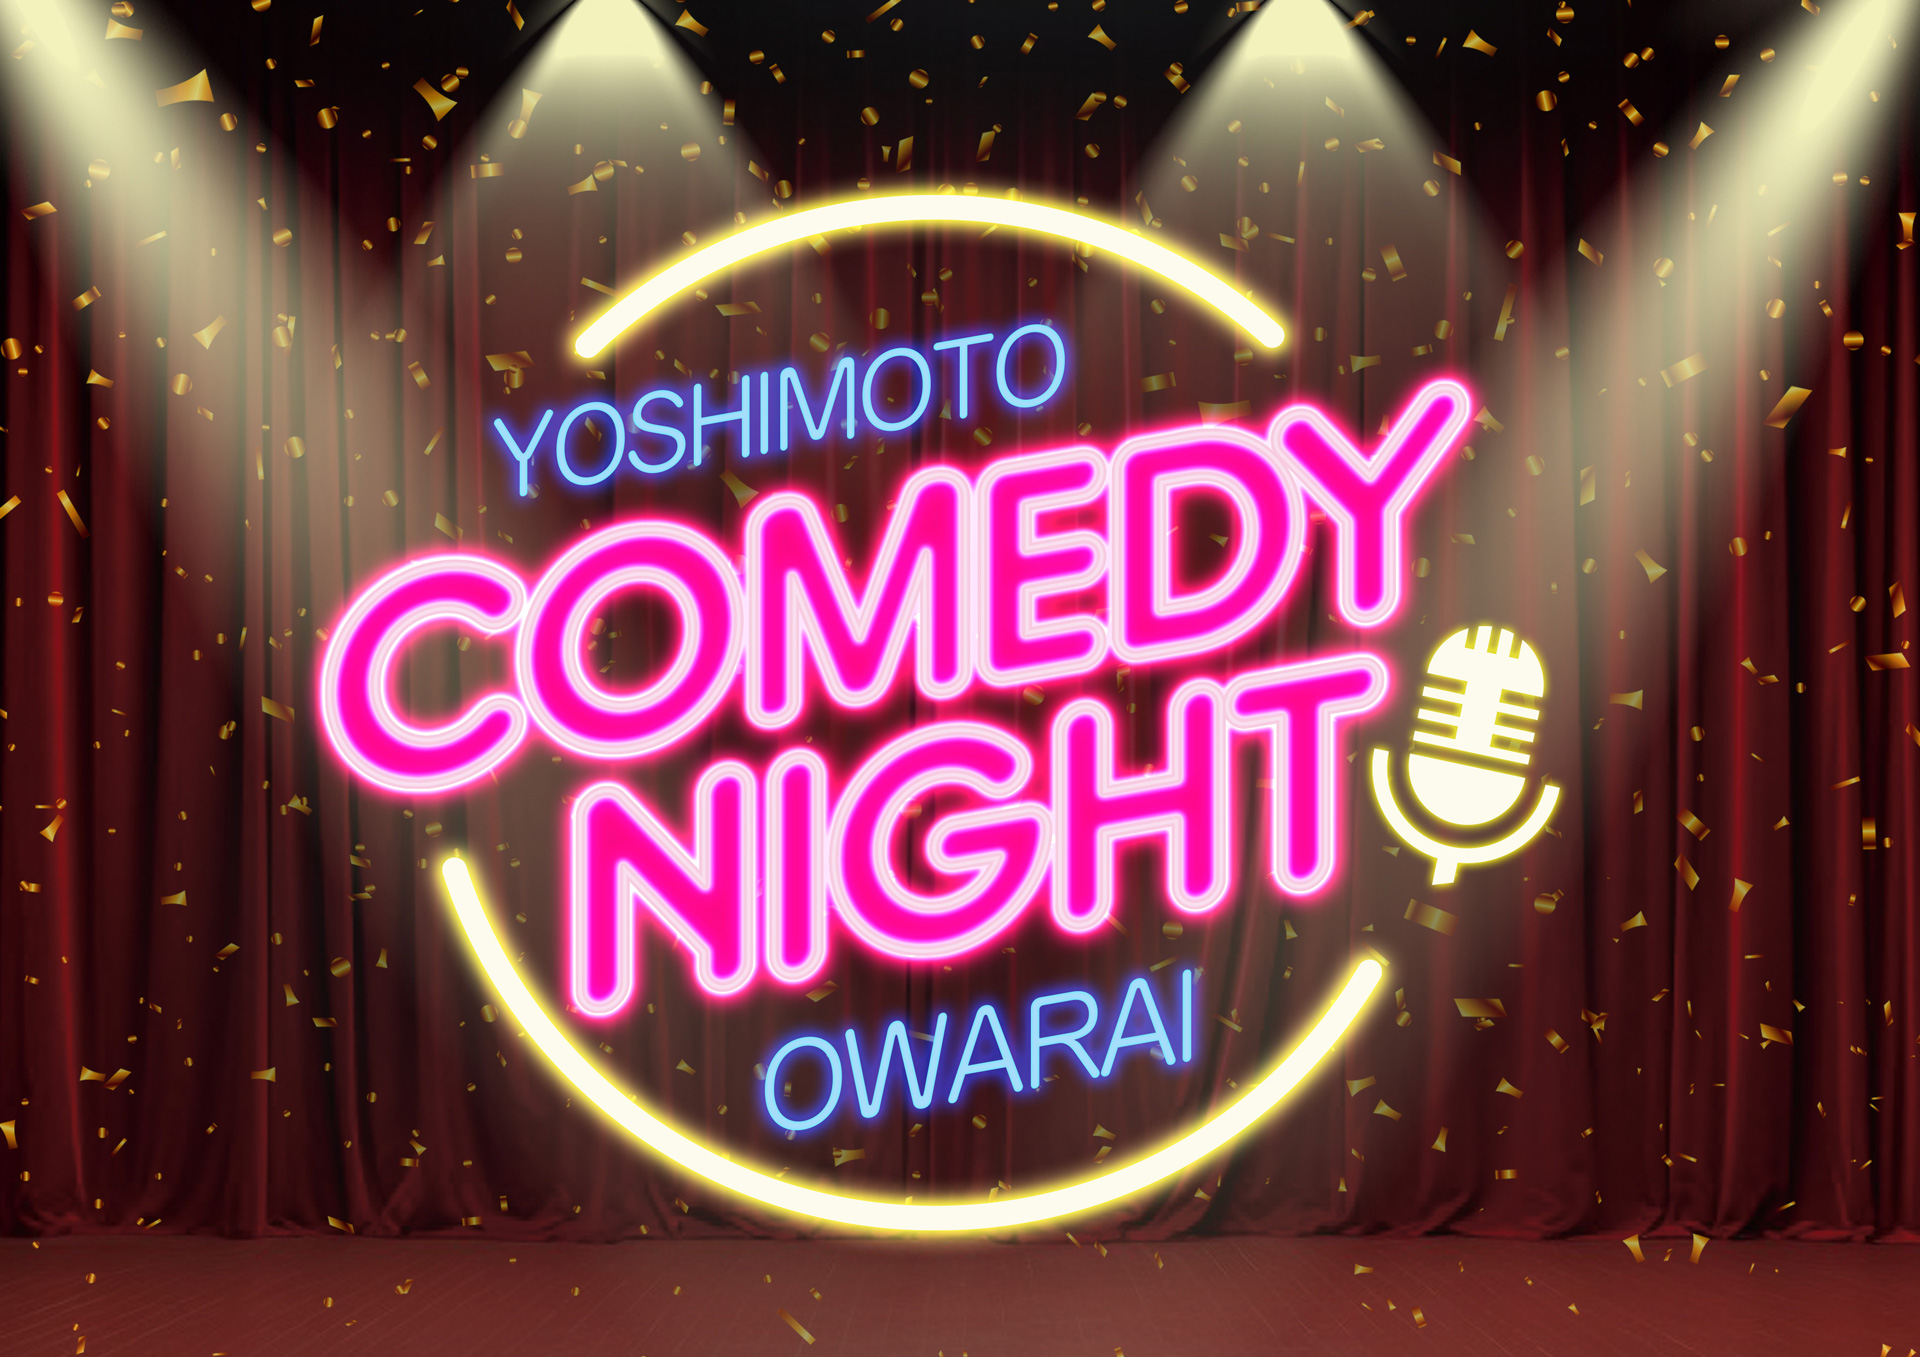 東京- Yoshimoto Comedy Night OWARAI